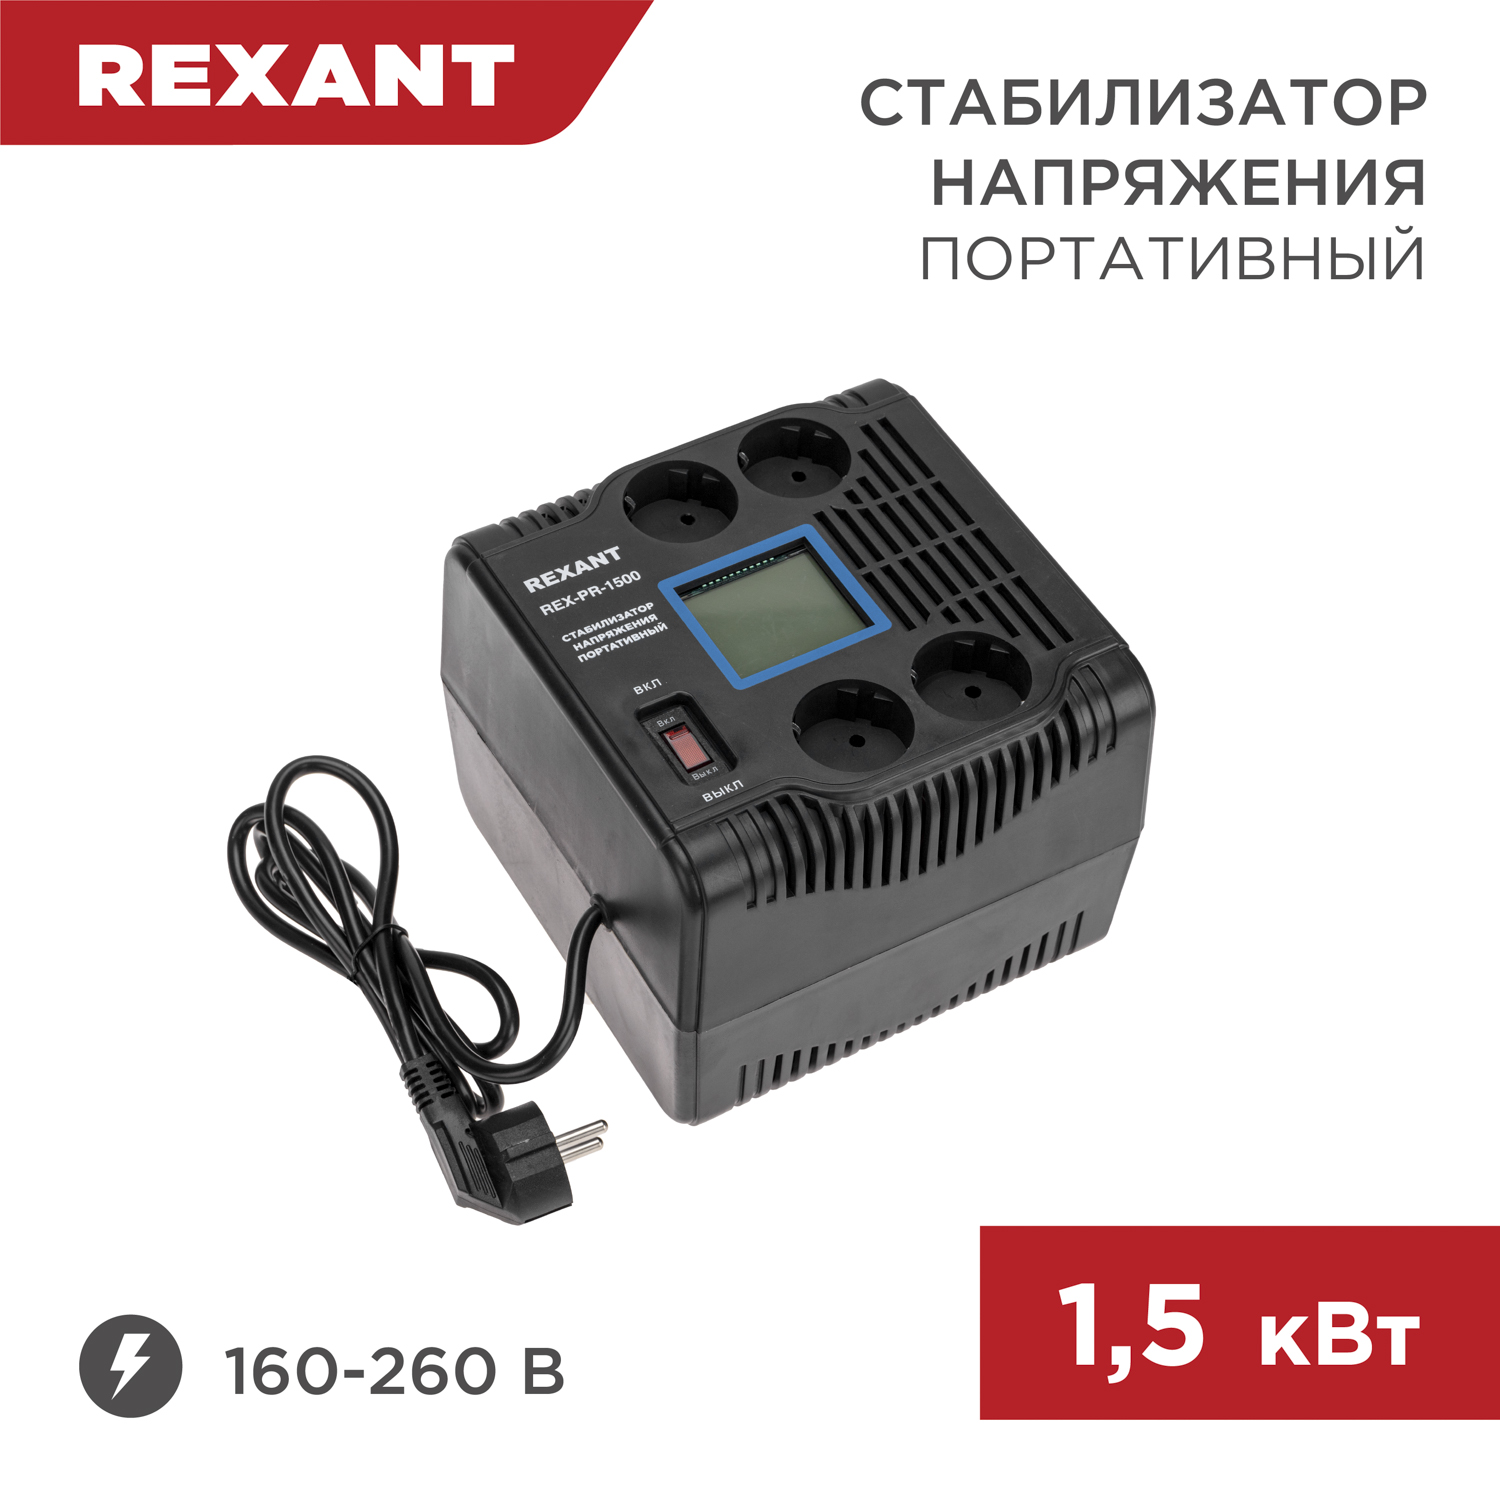 Стабилизатор напряжения портативный REXANT REX-PR-1500 11-5031 портативный детектор напряжения uni t